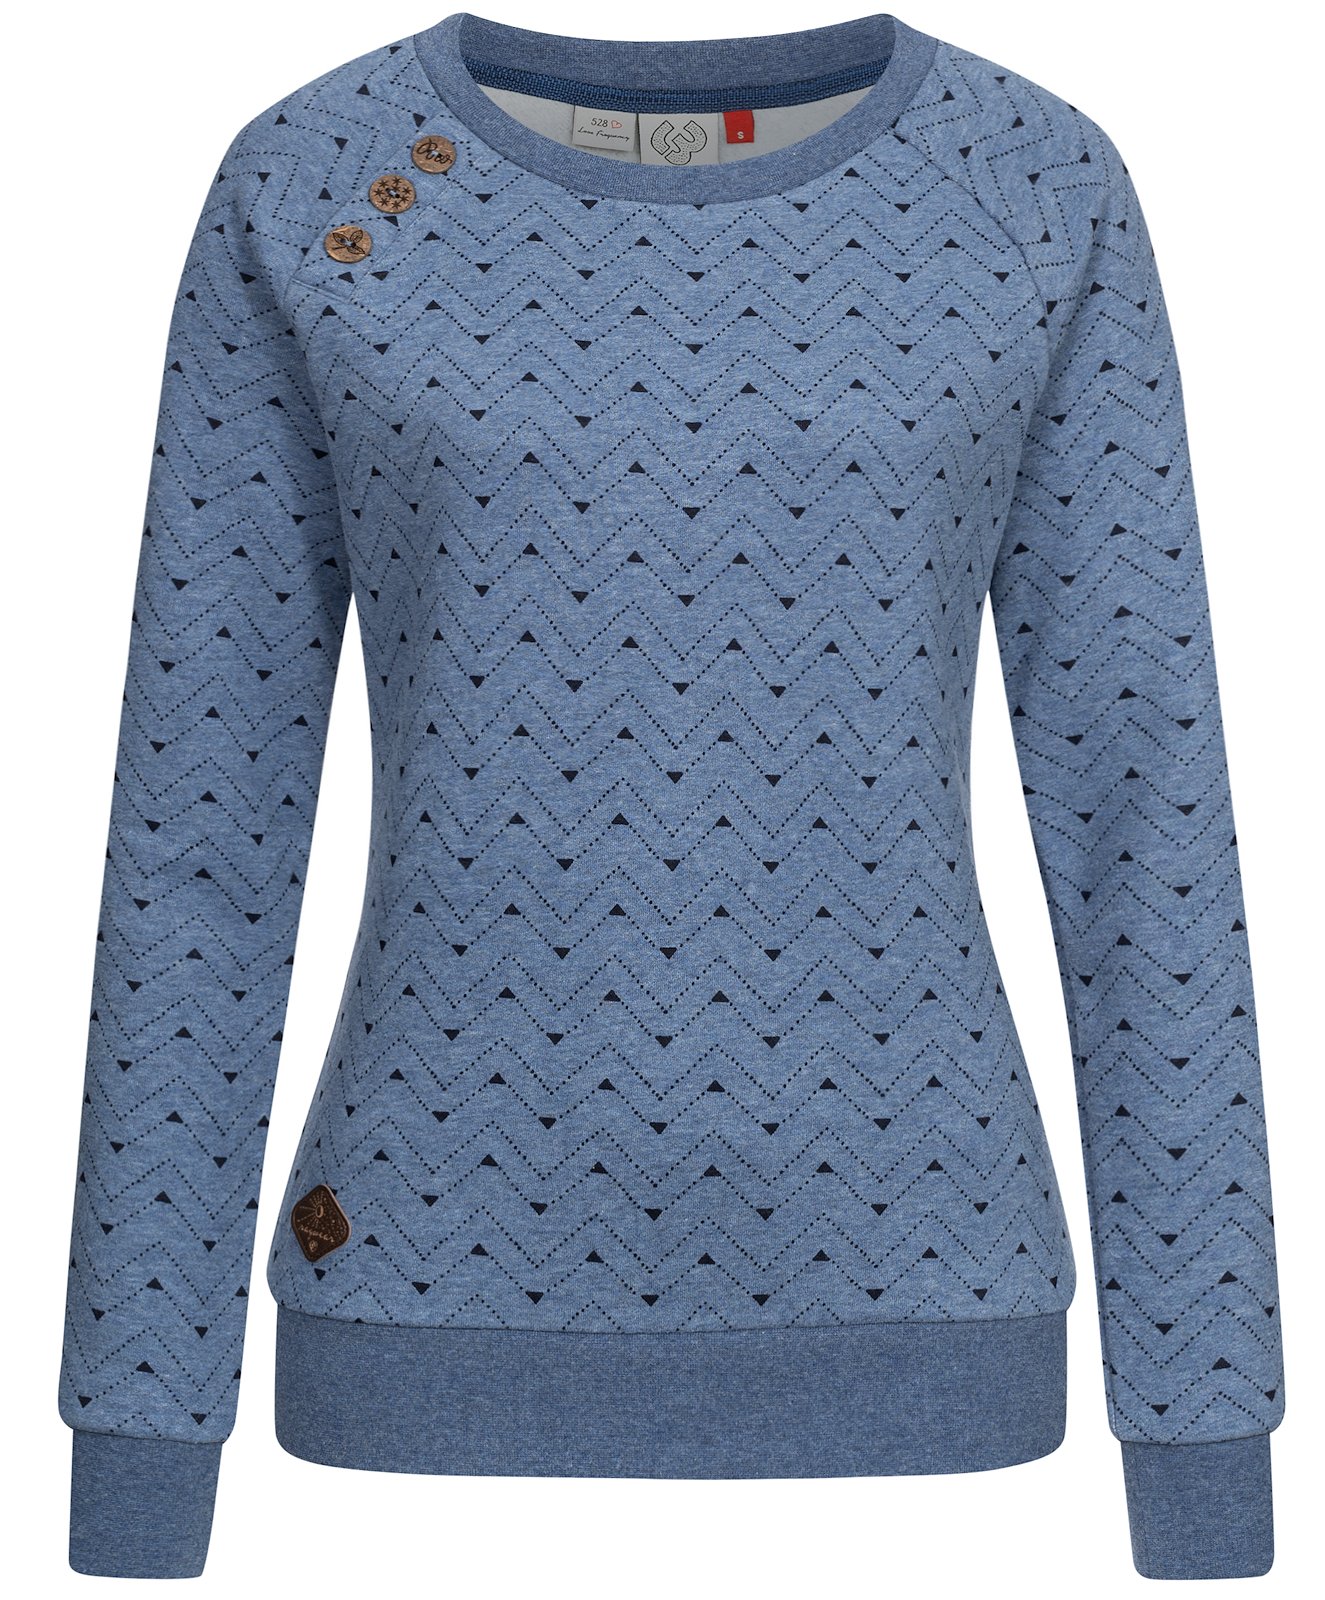 Ragwear Damen Sweatshirt Darria Zig Zag 2331-30002 | Ragwear | Marken |  L.E.M.B. Lifestyle Company